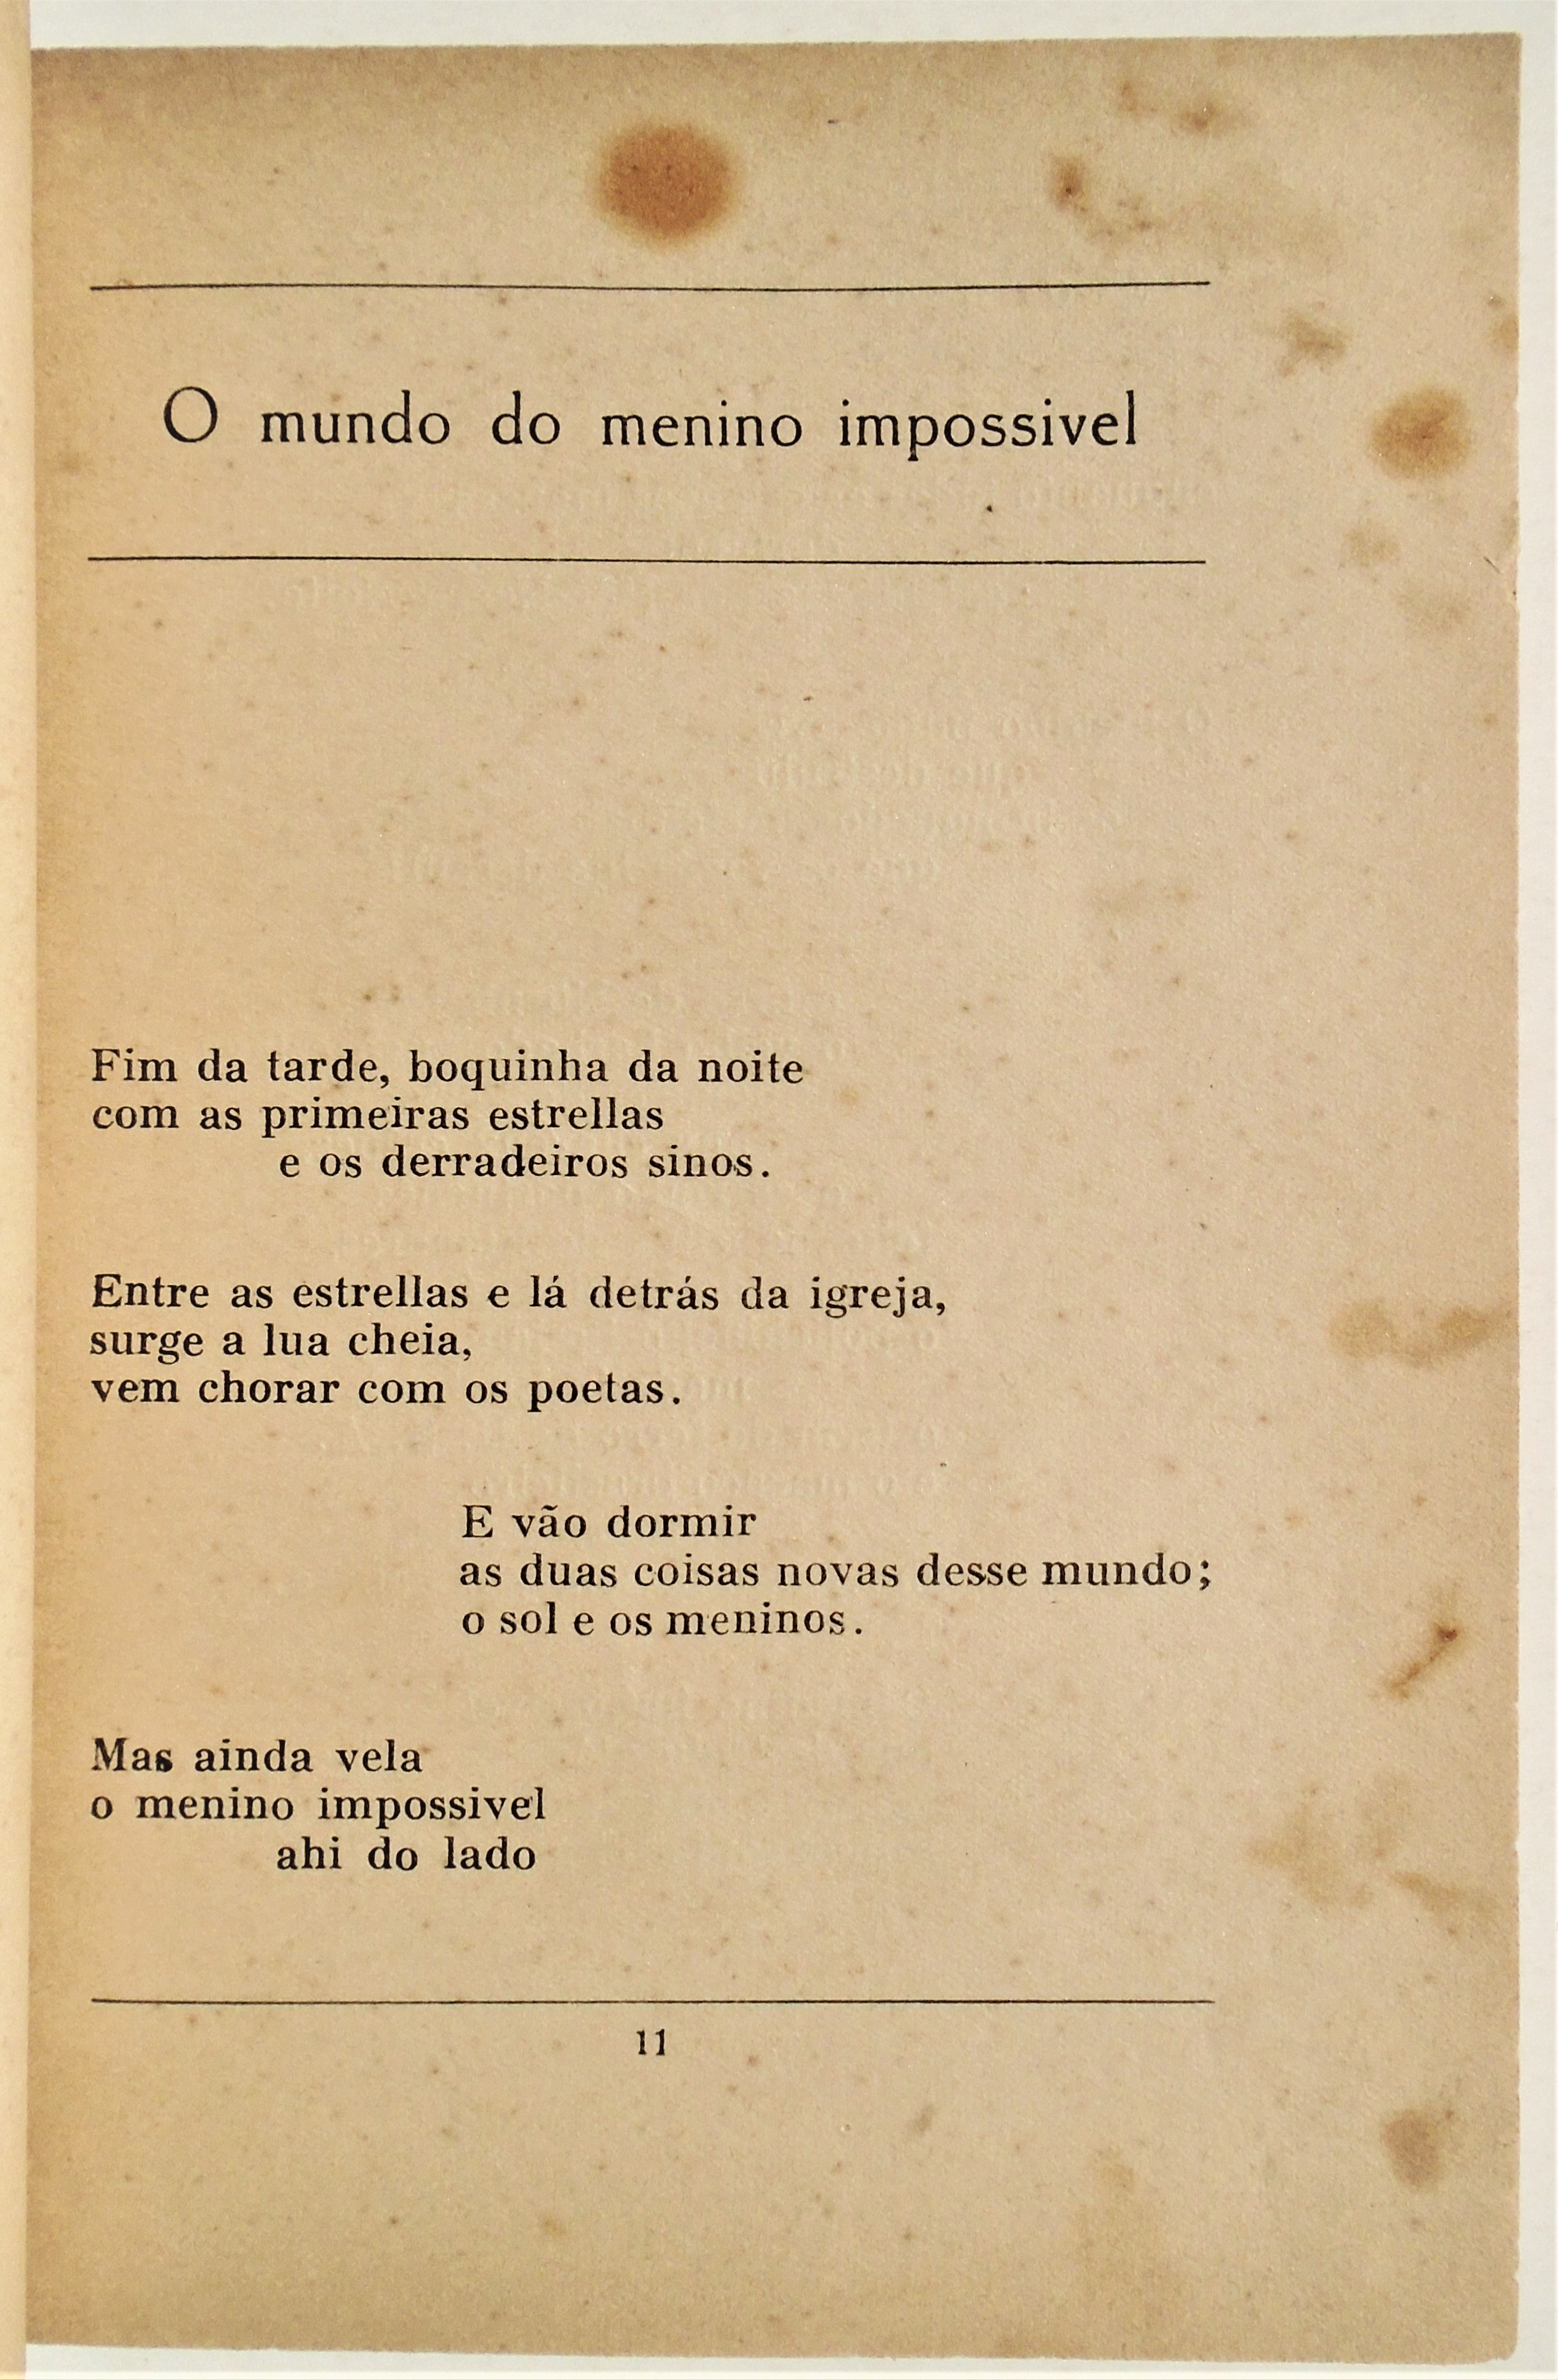 Jorge de Lima - Poemas Escolhidos